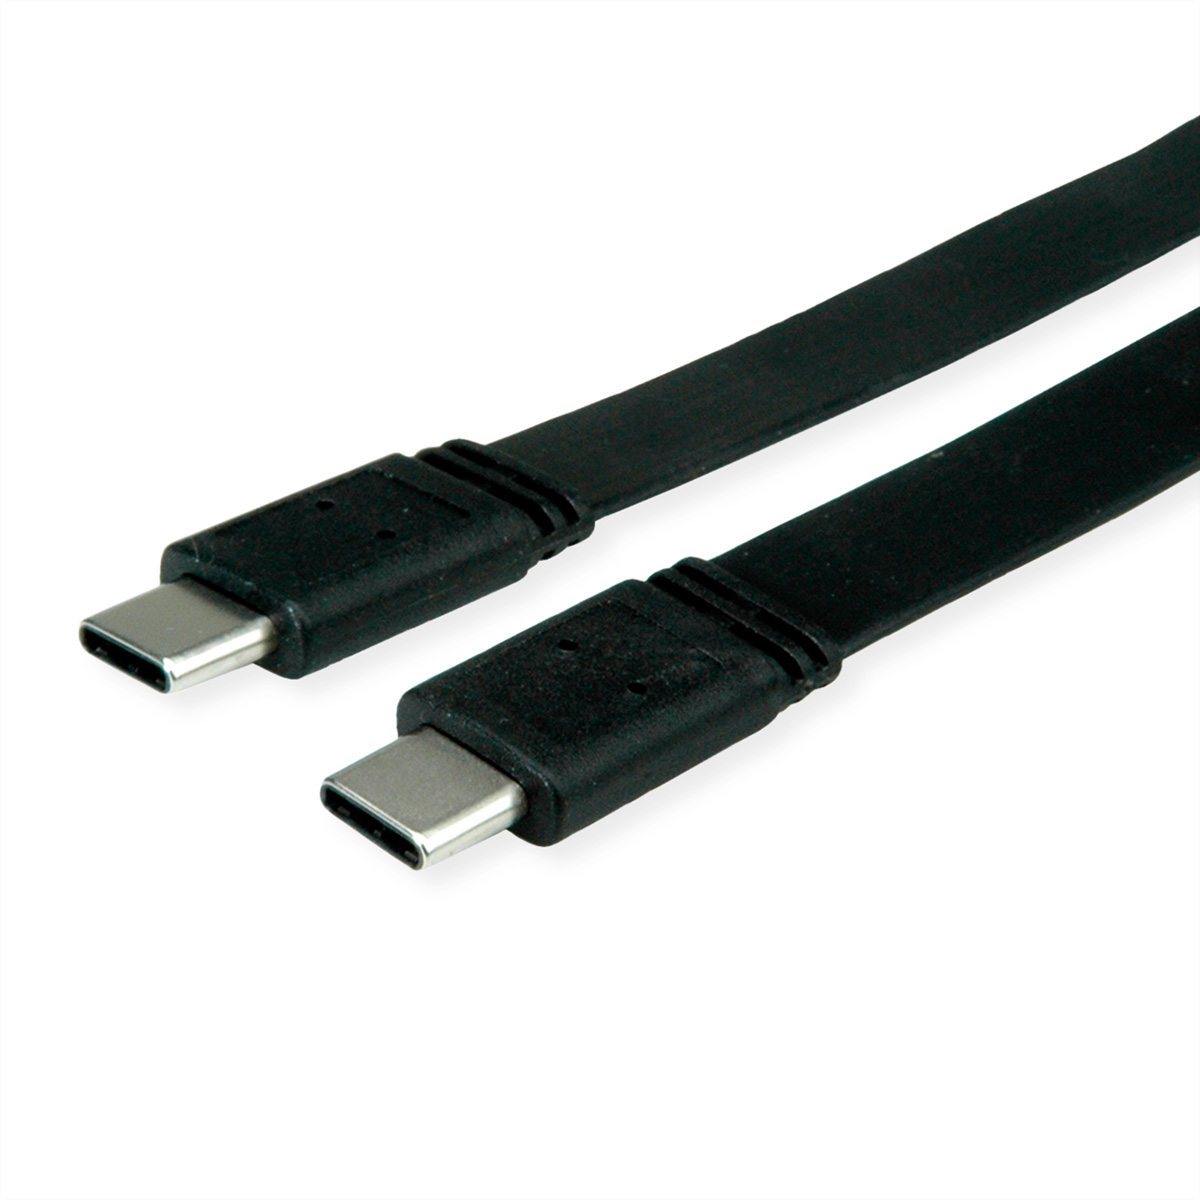 VALUE USB4 Gen 3 Kabel, Kabel Emark, ST/ST USB4 C-C